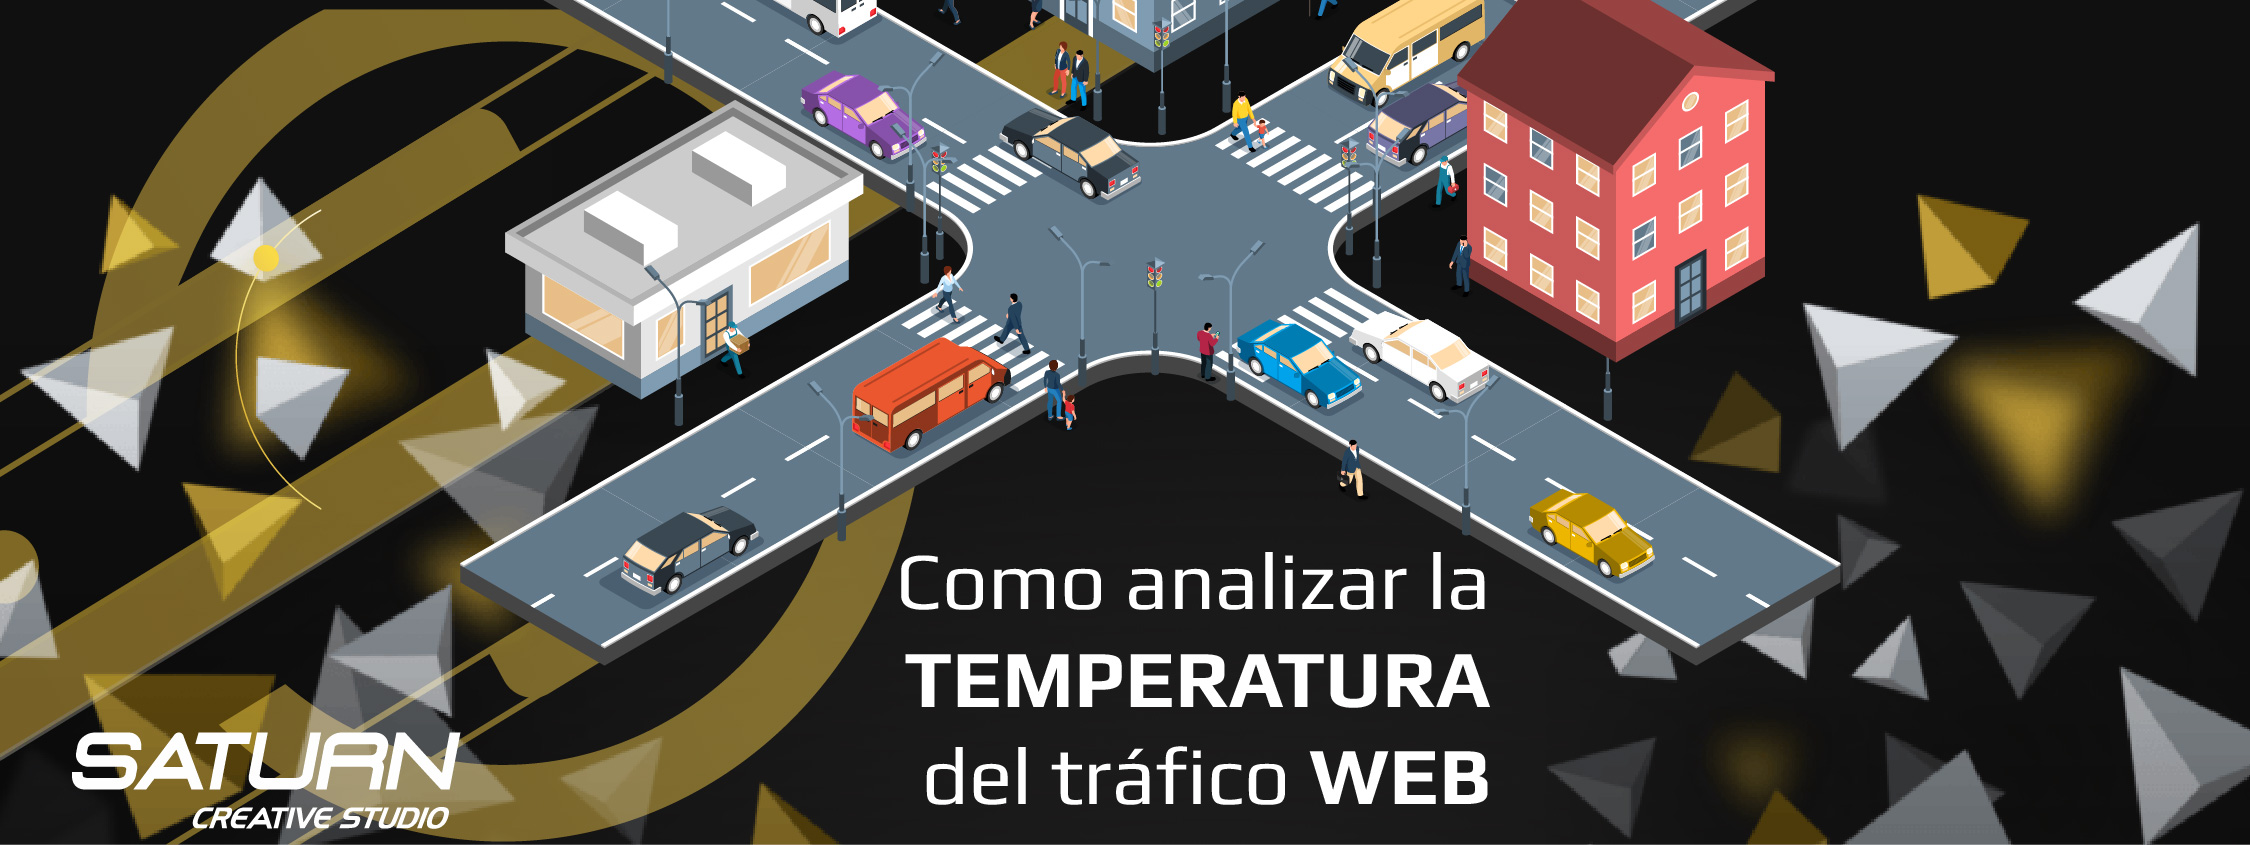 Como analizar la temperatura del tráfico web